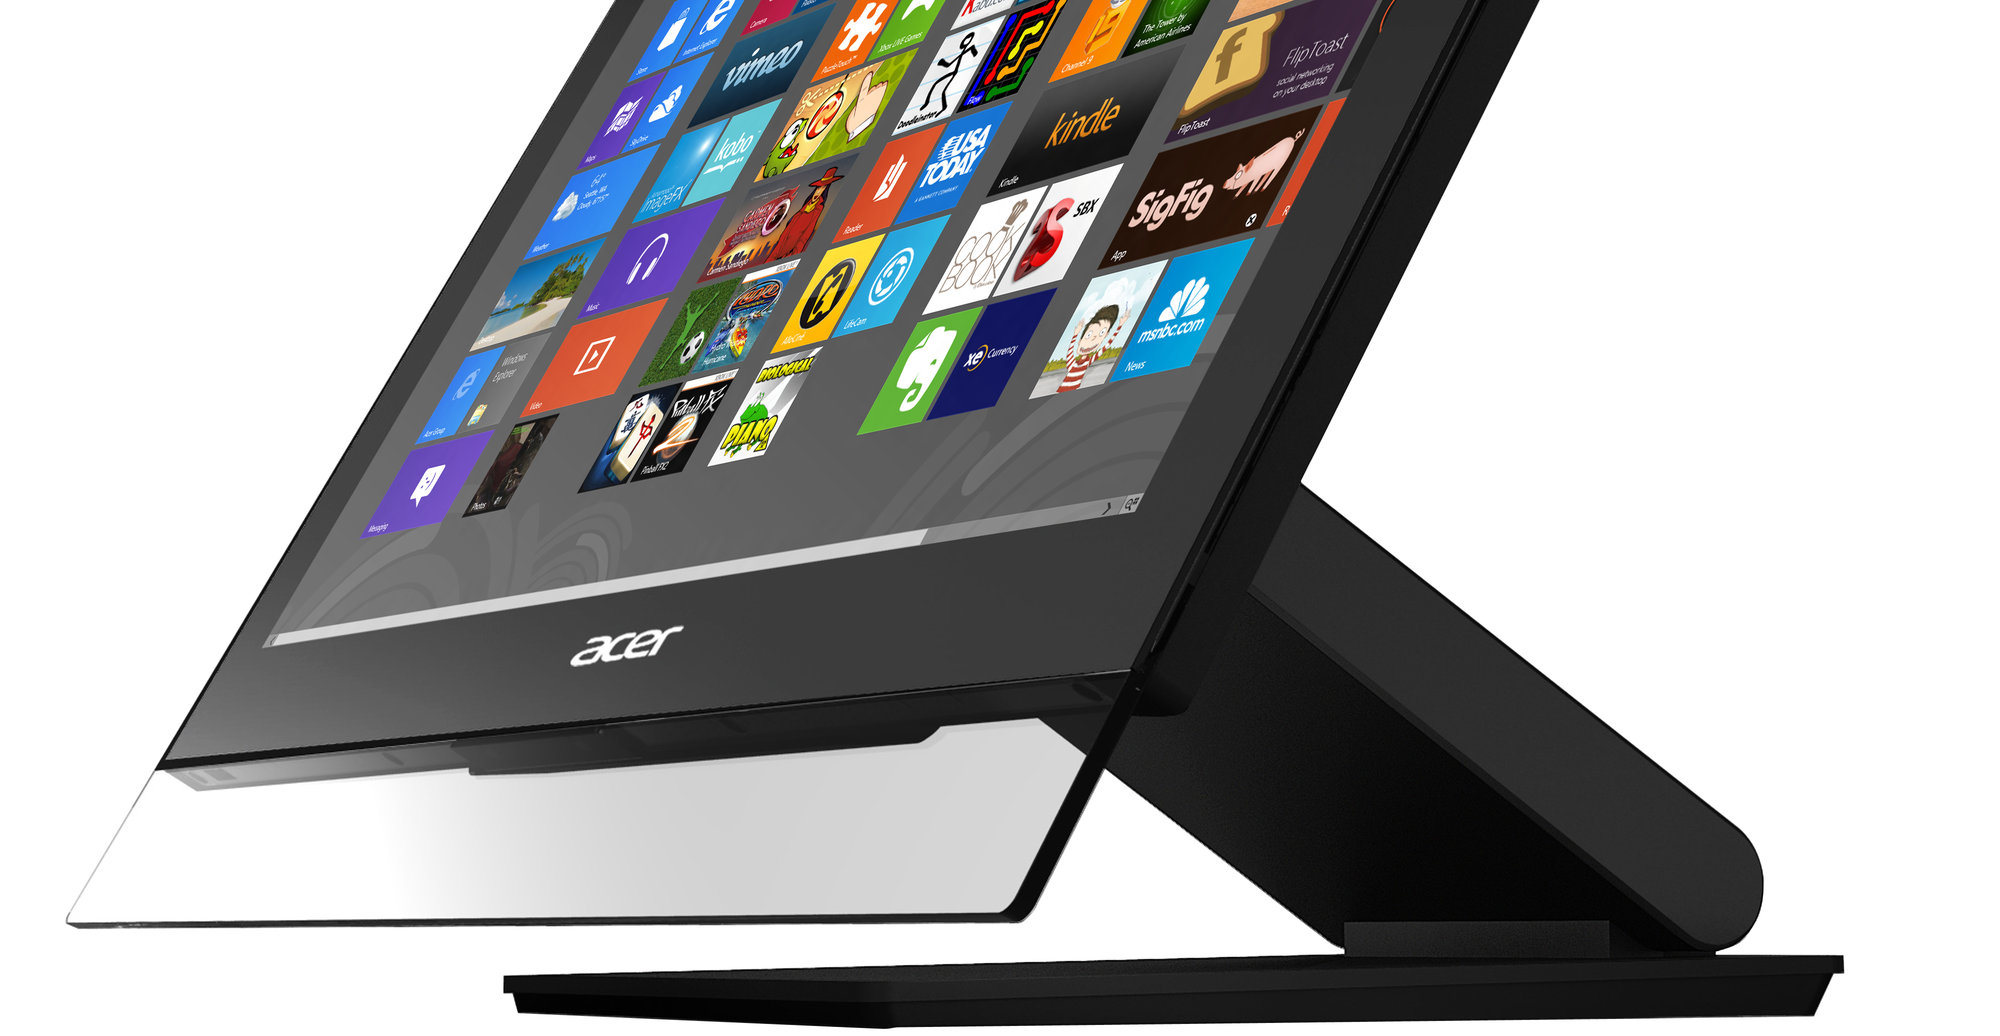 Dette er Acers alt-i-ett-maskin Aspire 7600U med Windows 8.